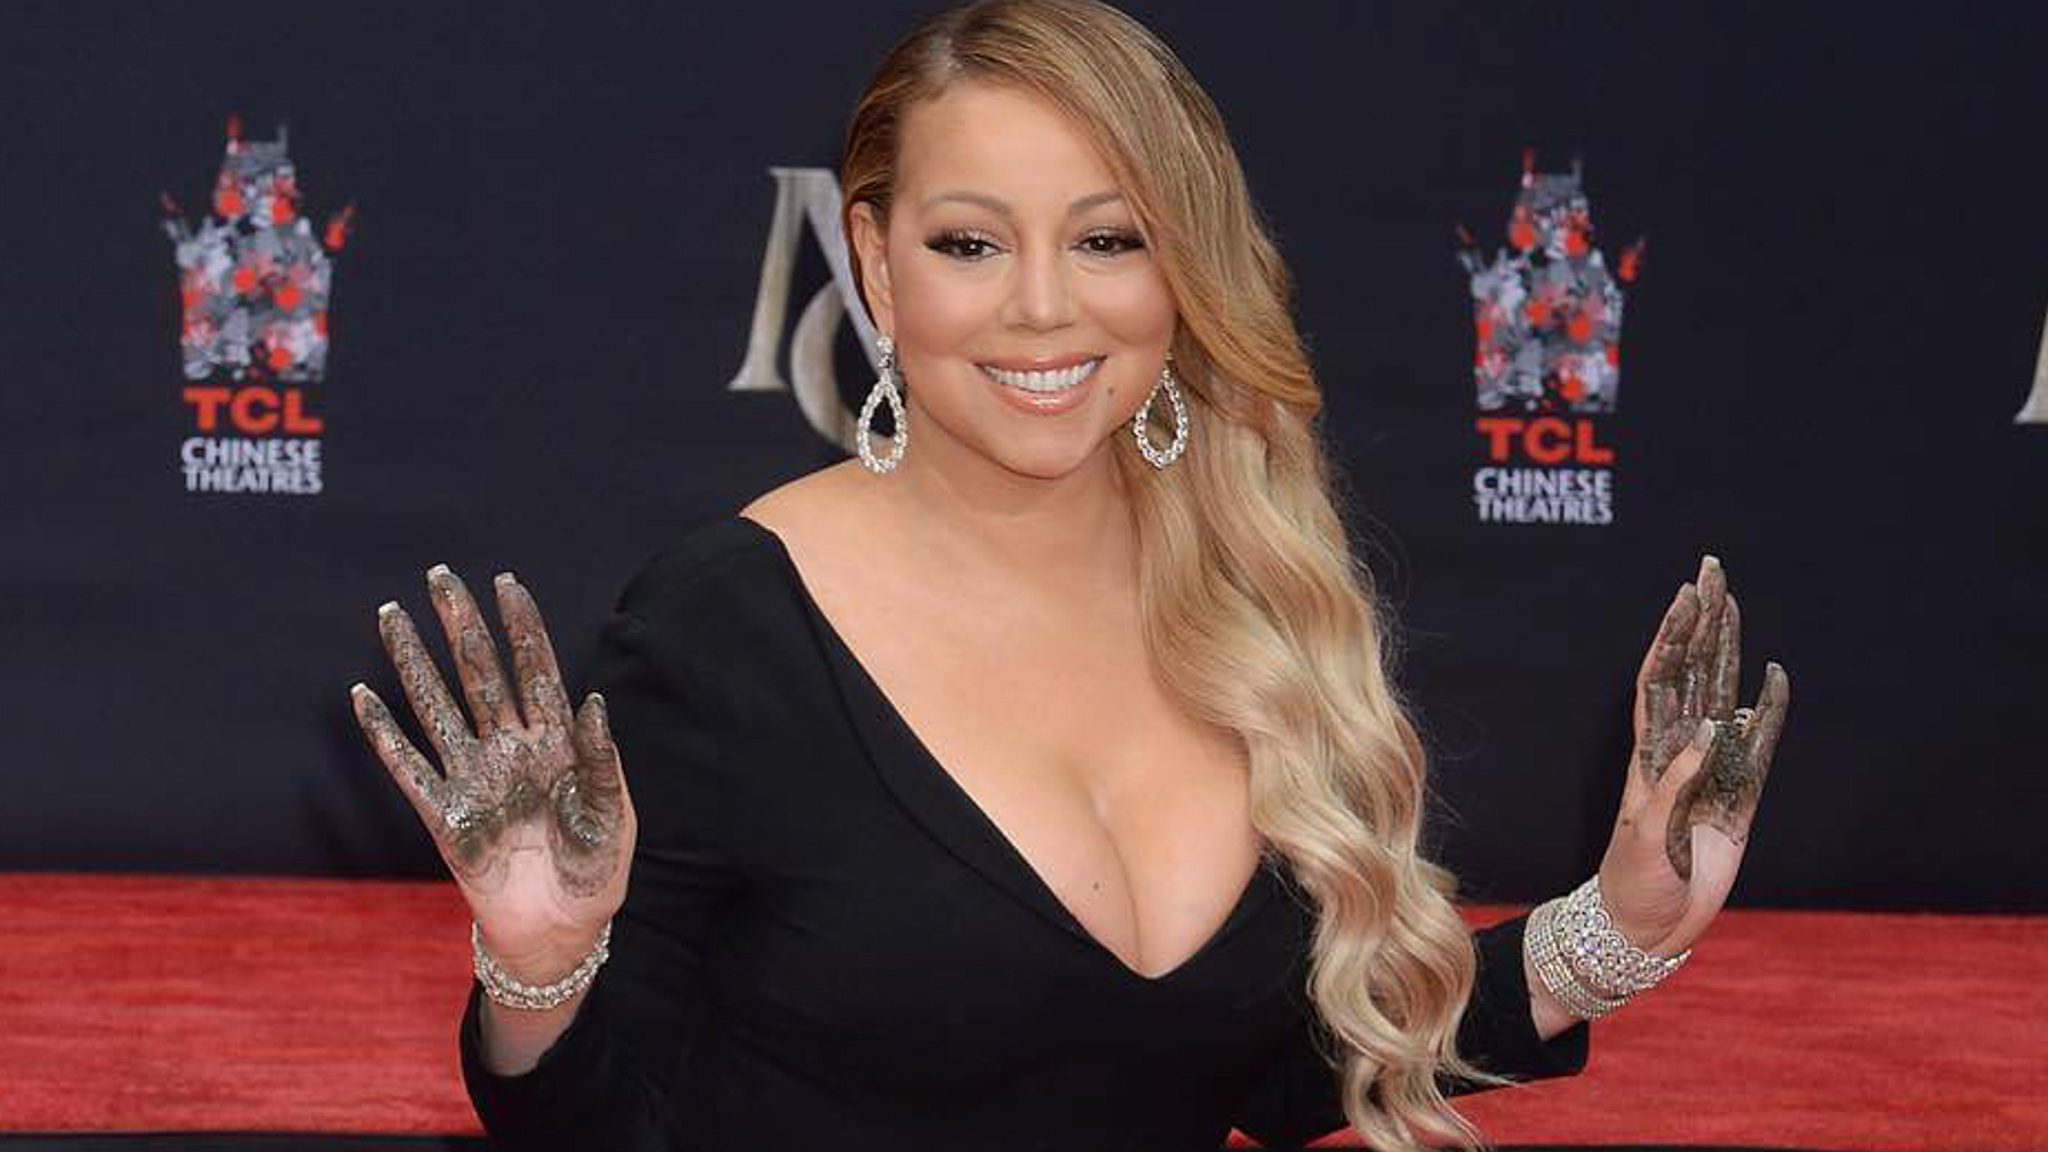 LOOK: Hollywood honors diva Mariah Carey